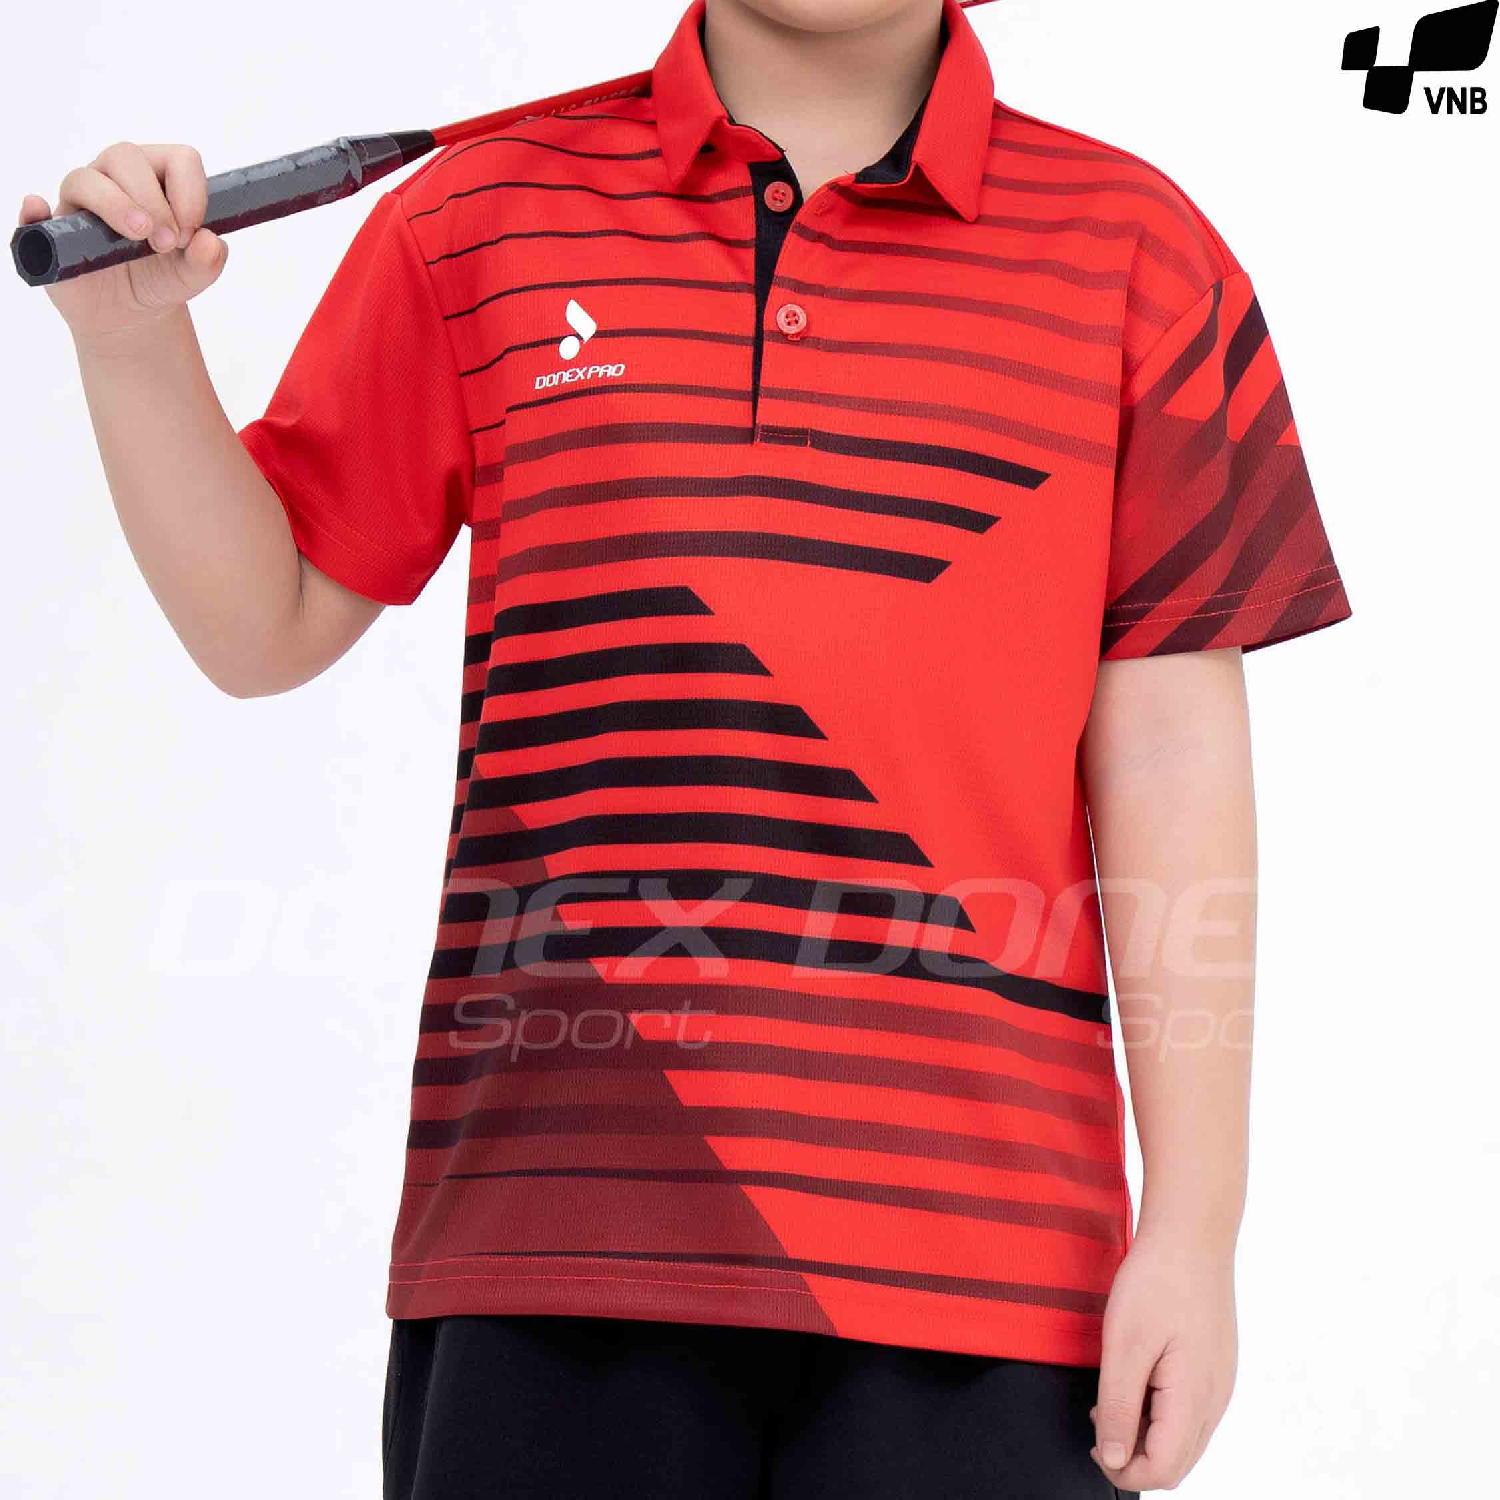 Áo cầu lông trẻ em Donex Pro TC-1044 đỏ phối đen chính hãng